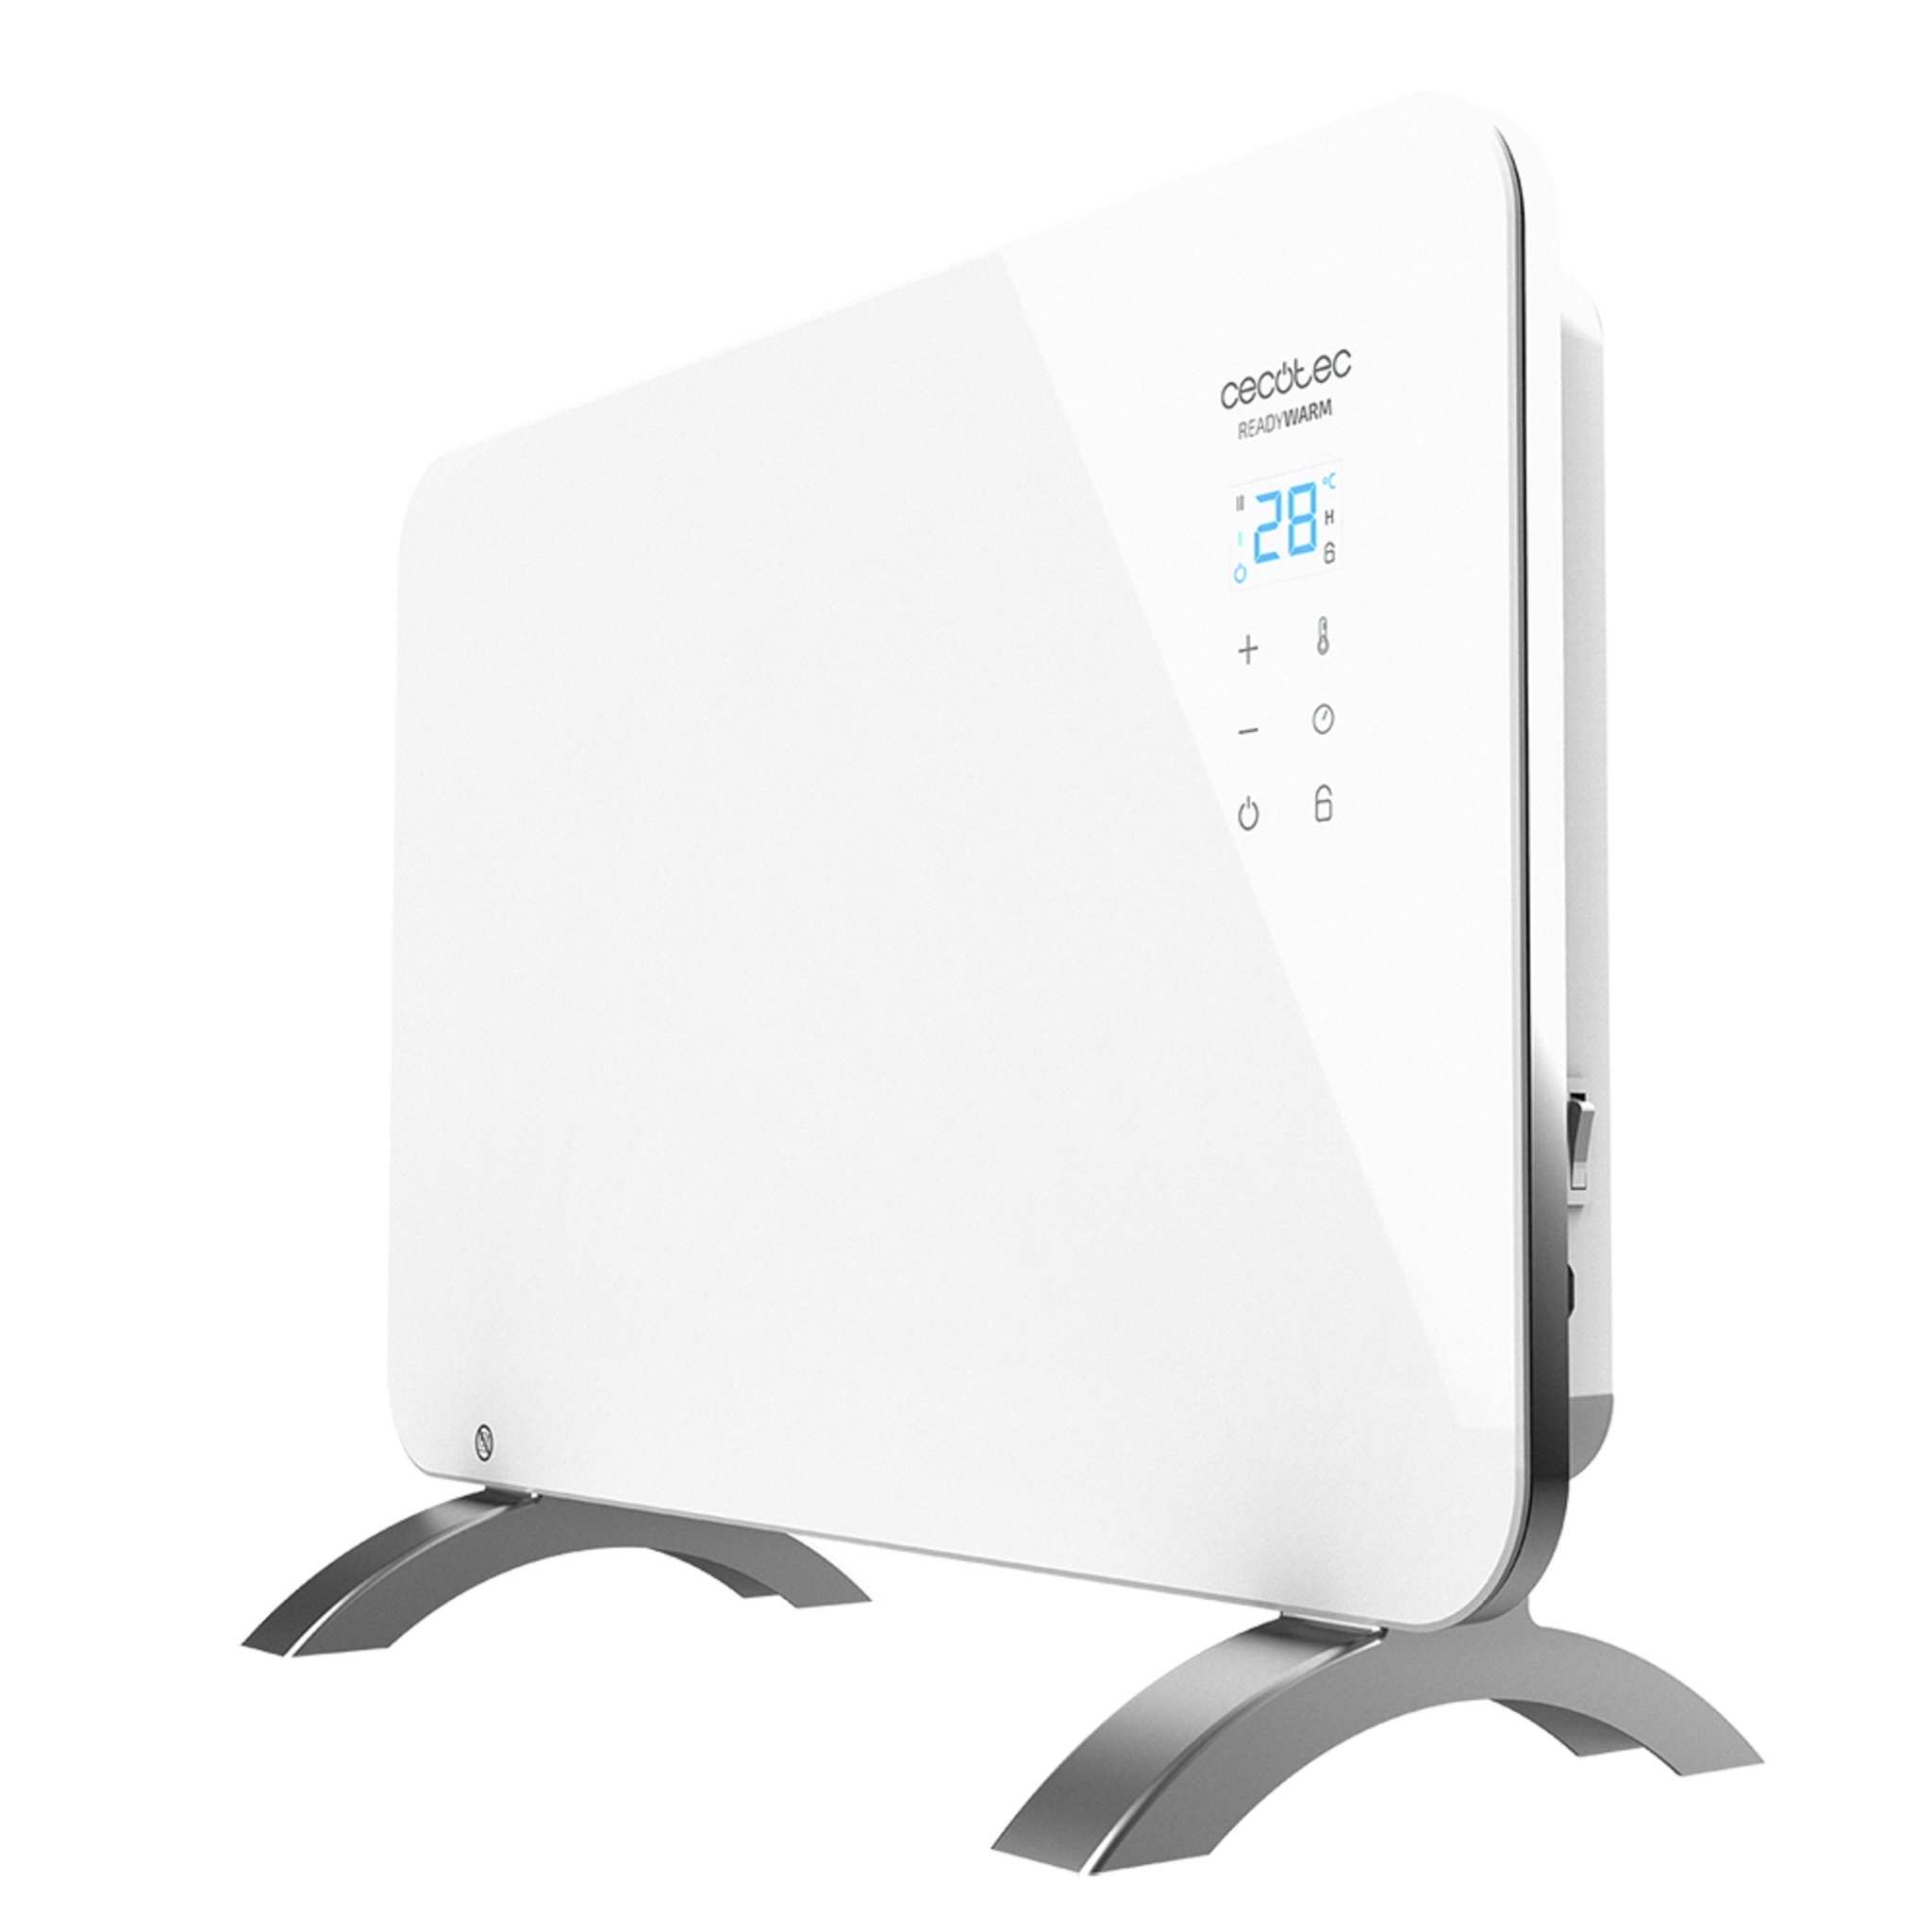 Convecteur en verre Ready Warm 6650 Crystal Connection. Contrôle via Wi-Fi avec thermostat réglable, minuterie, support, adapté aux salles de bains (IP24), silencieux et 1000 W